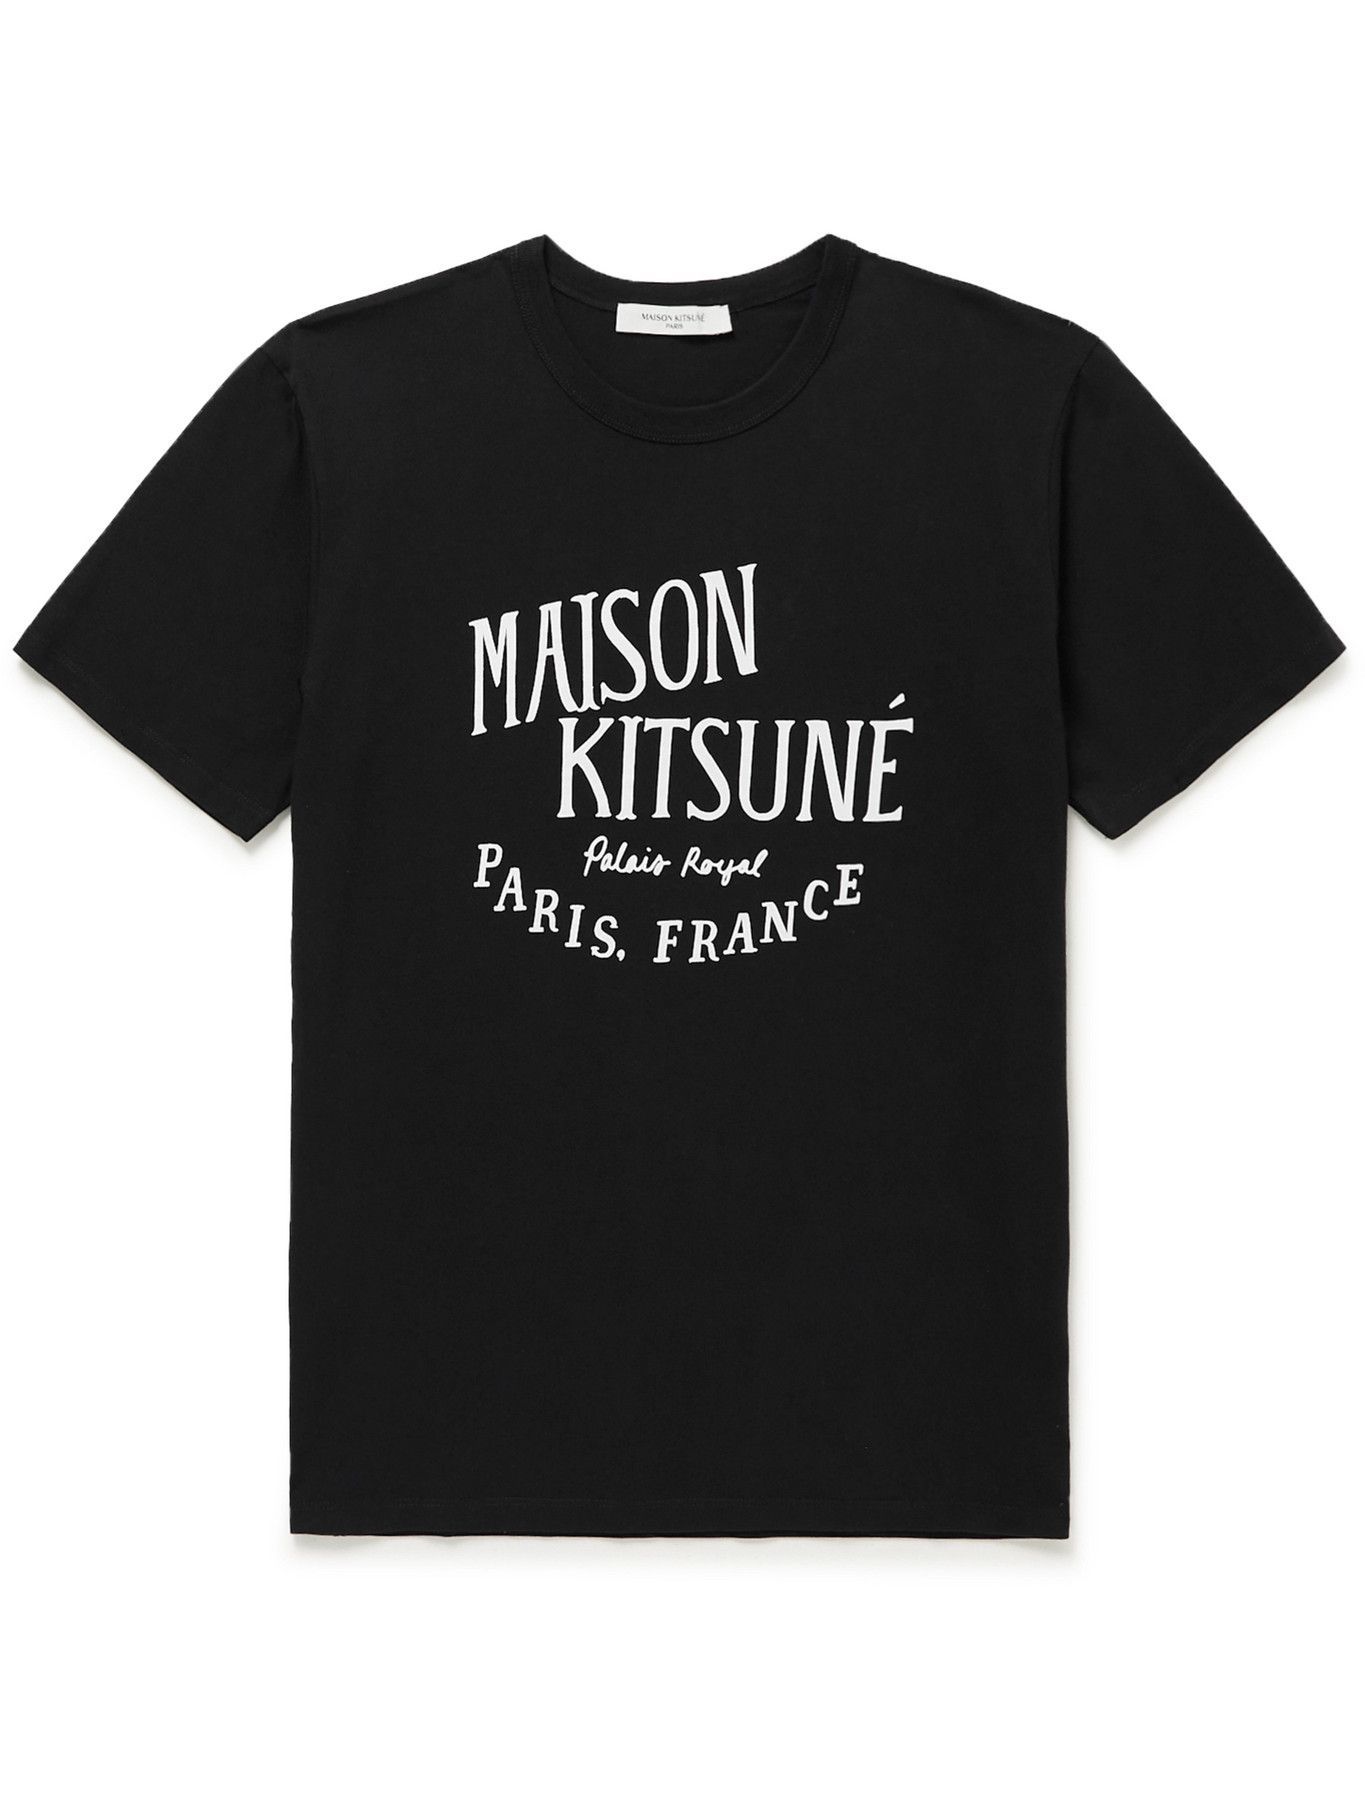 Maison Kitsuné - Printed Cotton-Jersey T-Shirt - Black Maison Kitsune